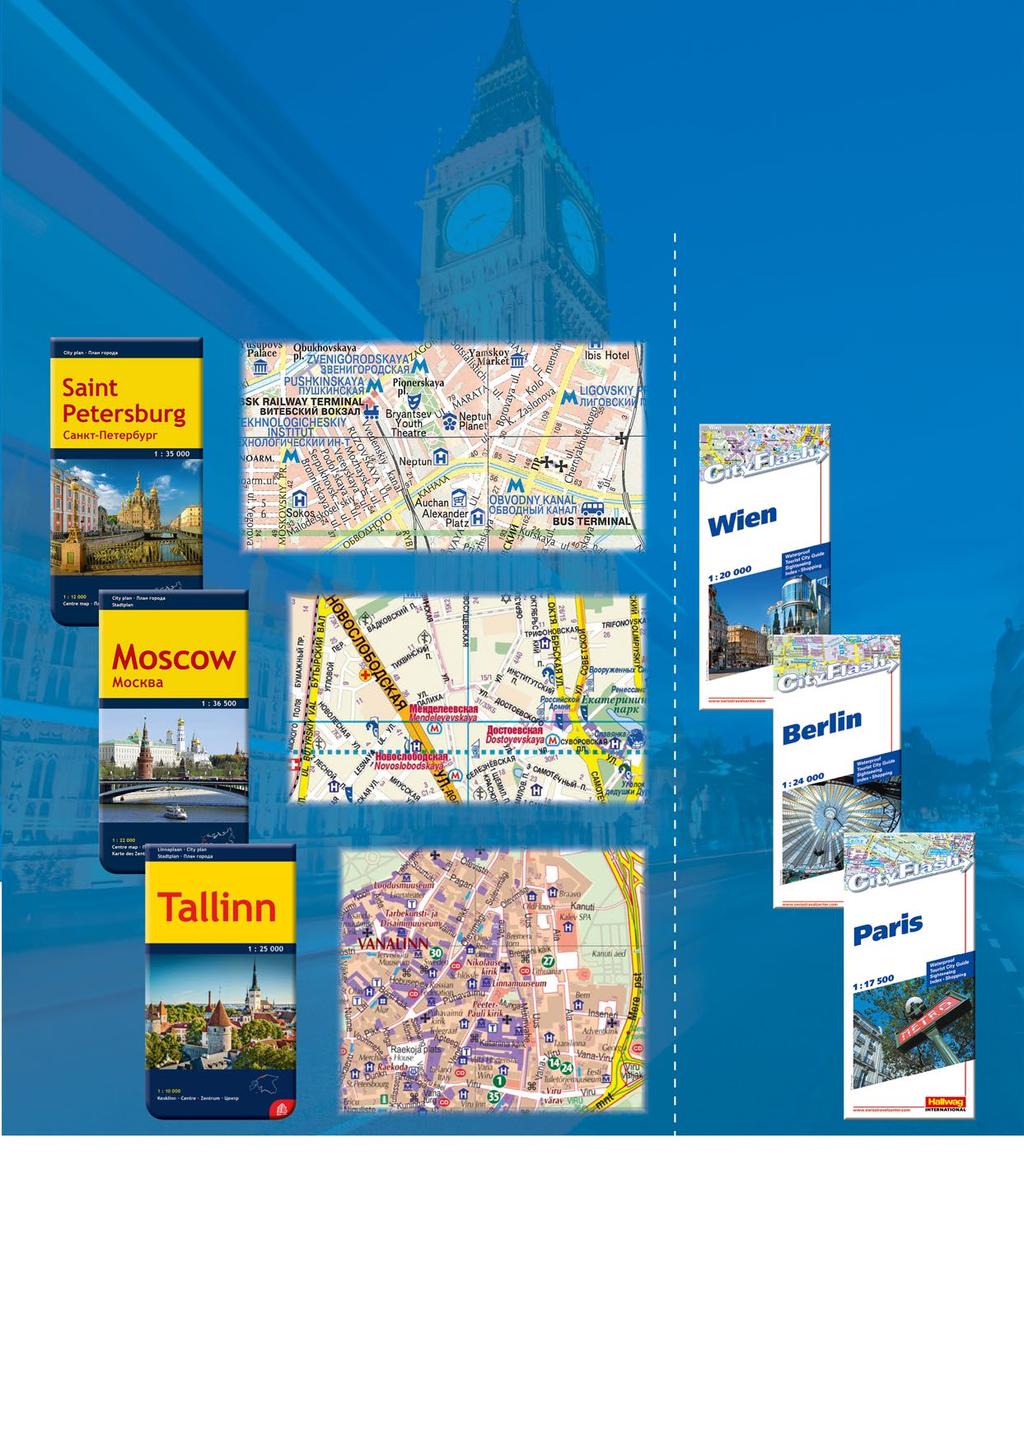 17 Kaupunkikartat ulkomailta Kartta kertoo kaupungin tarinan Kaupunkikartat helpottavat matkan suunnittelua ja vaikkapa hotellin valintaa.